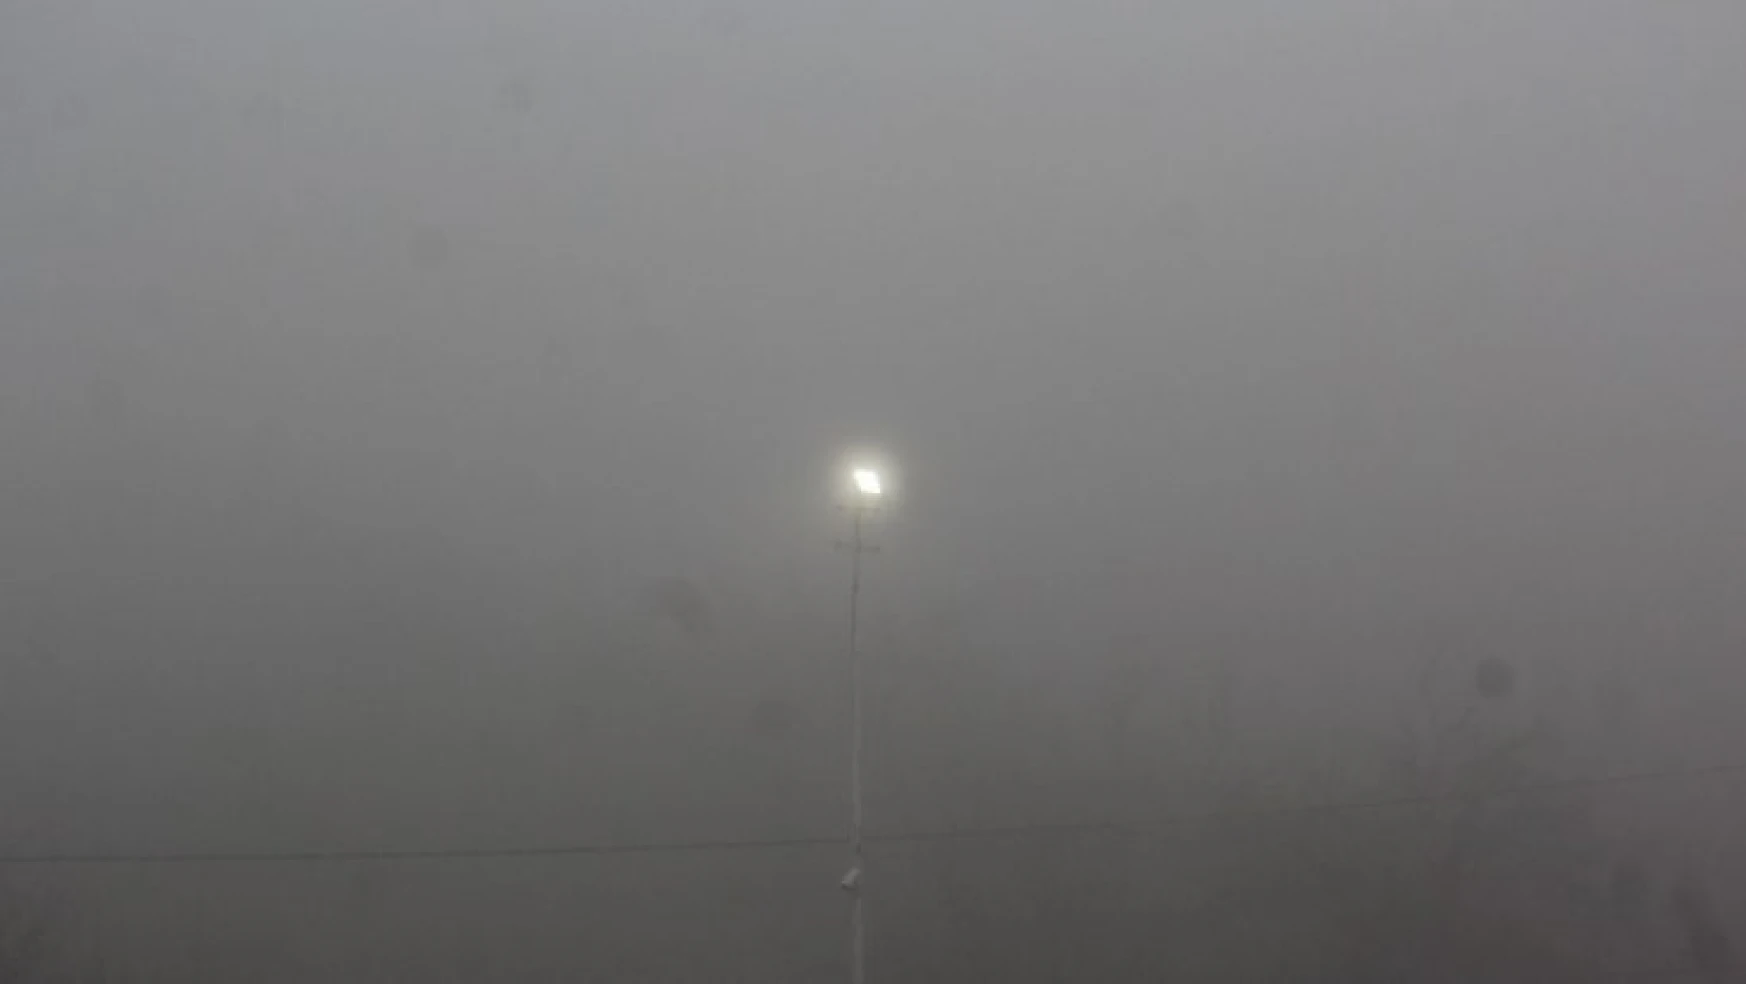 Malatya'da sis etkili oluyor